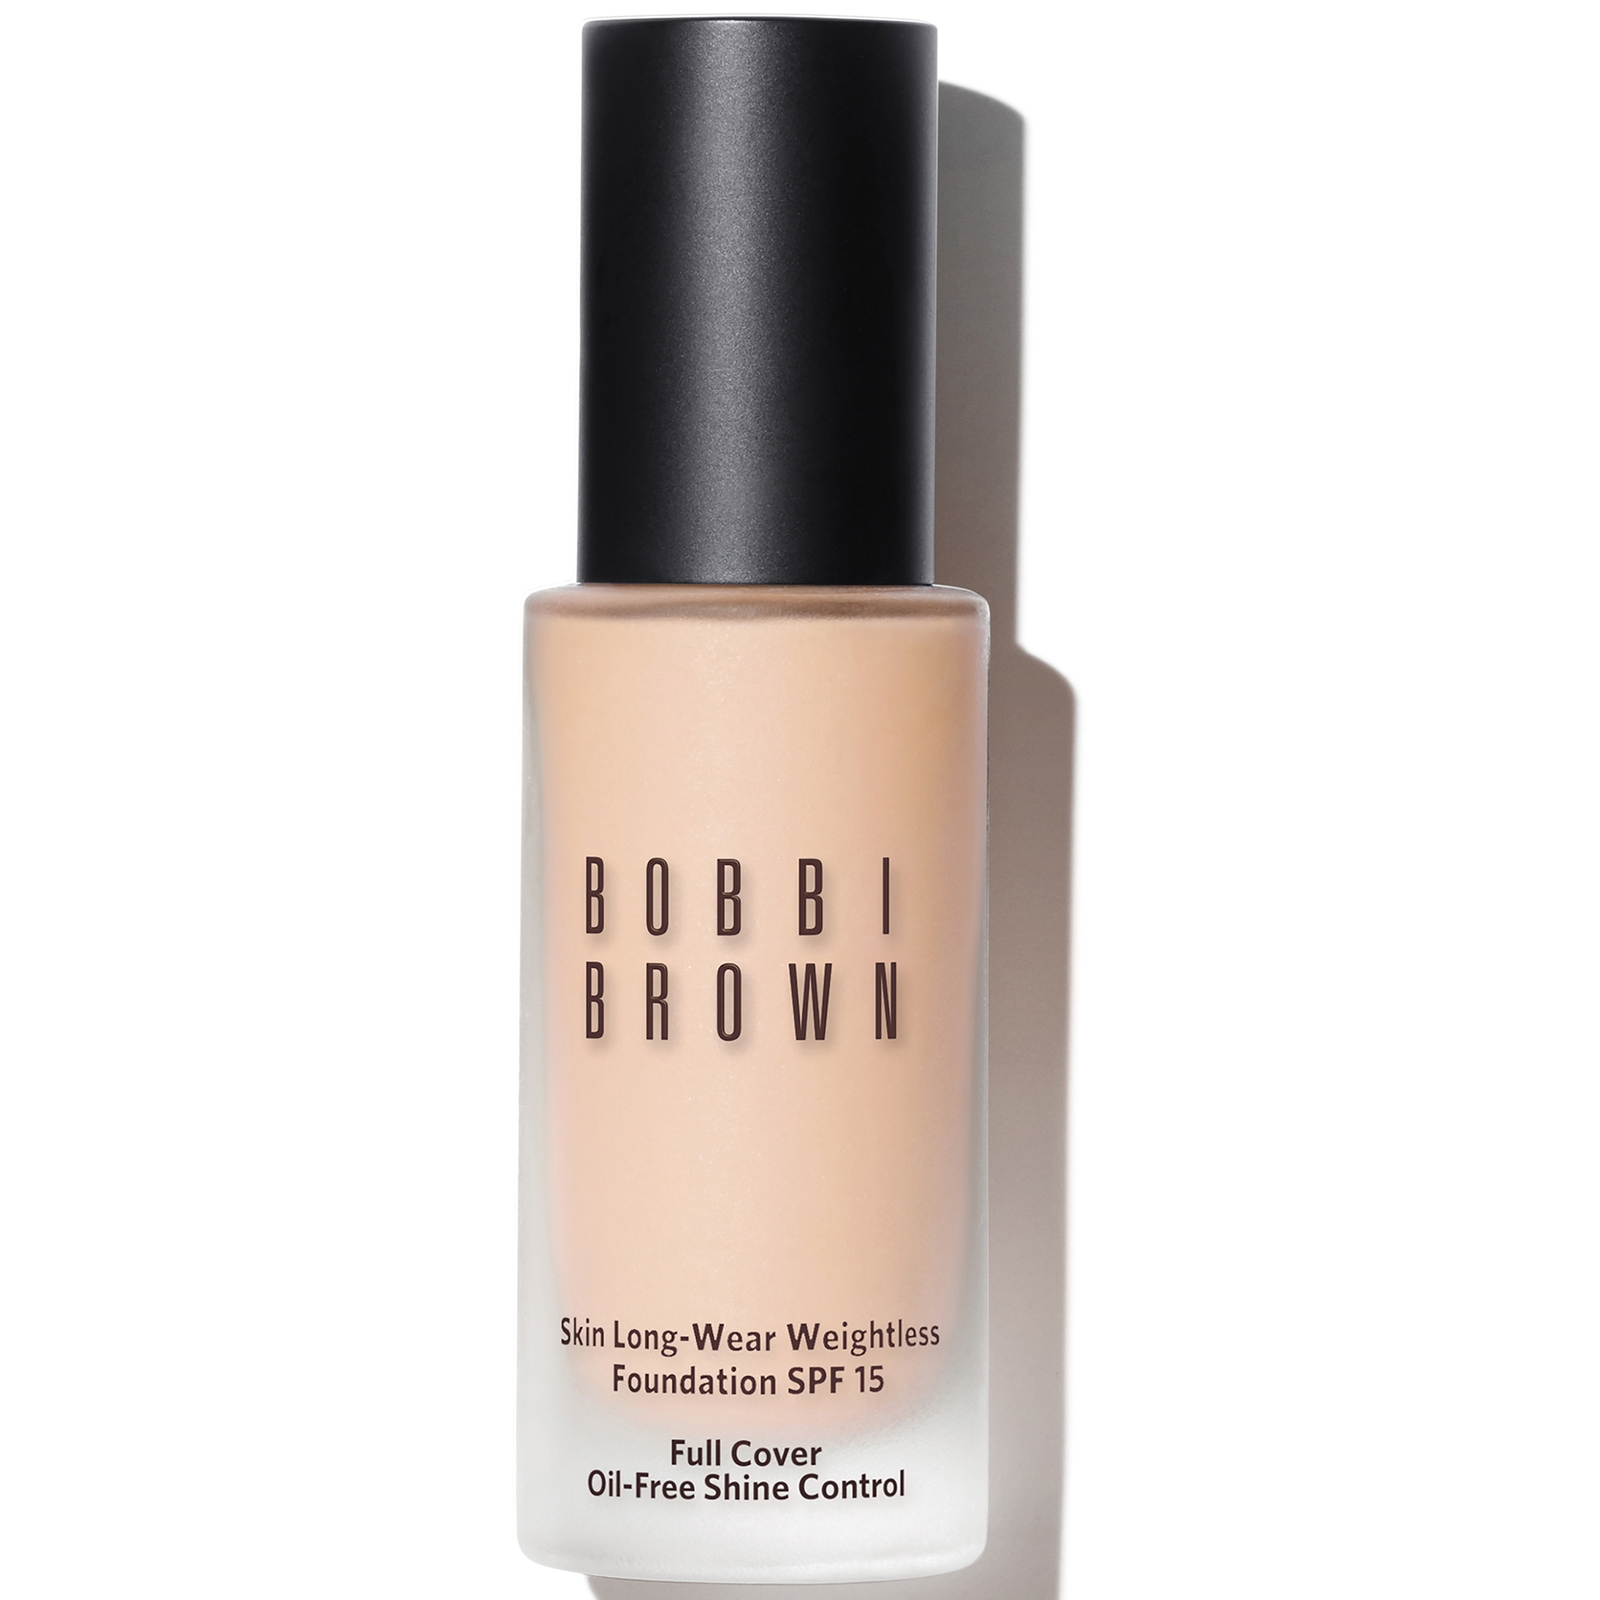 Bobbi Brown Skin Long-Wear Weightless Foundation SPF 15 (verschiedene Farbtöne) - Neutral Porcelain von Bobbi Brown